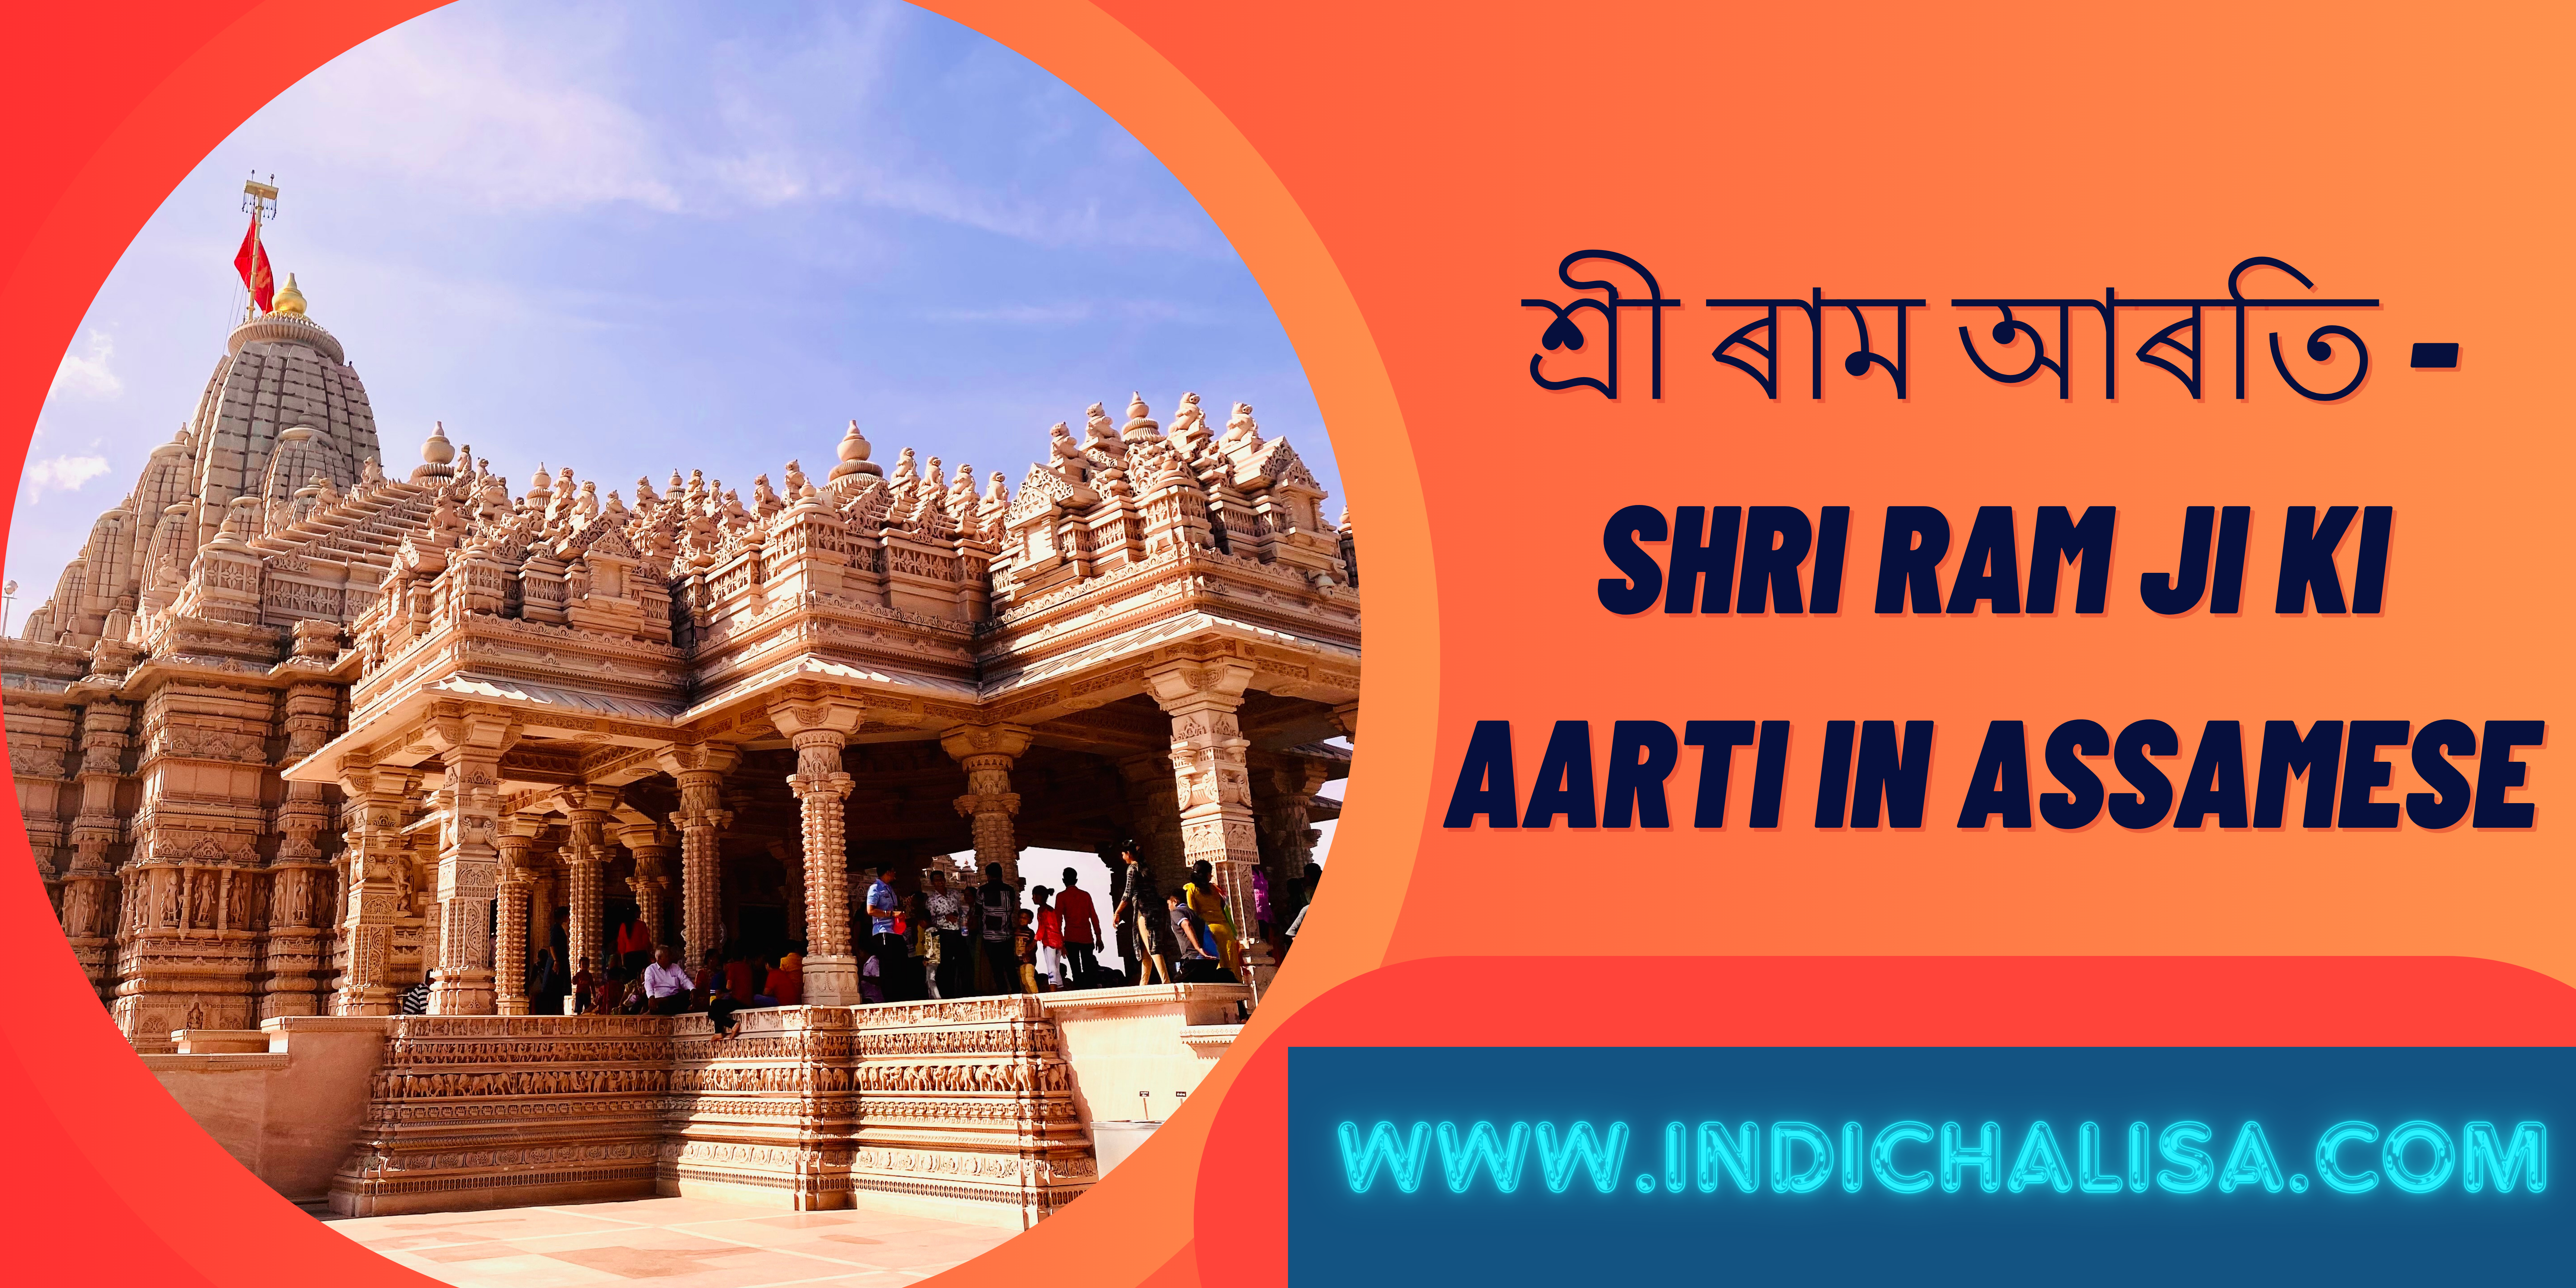 Shri Ram Ji Ki Aarti In Assamese|Shri Ram Ji Ki Aarti In Assamese |Indichalisa|Indichalisa